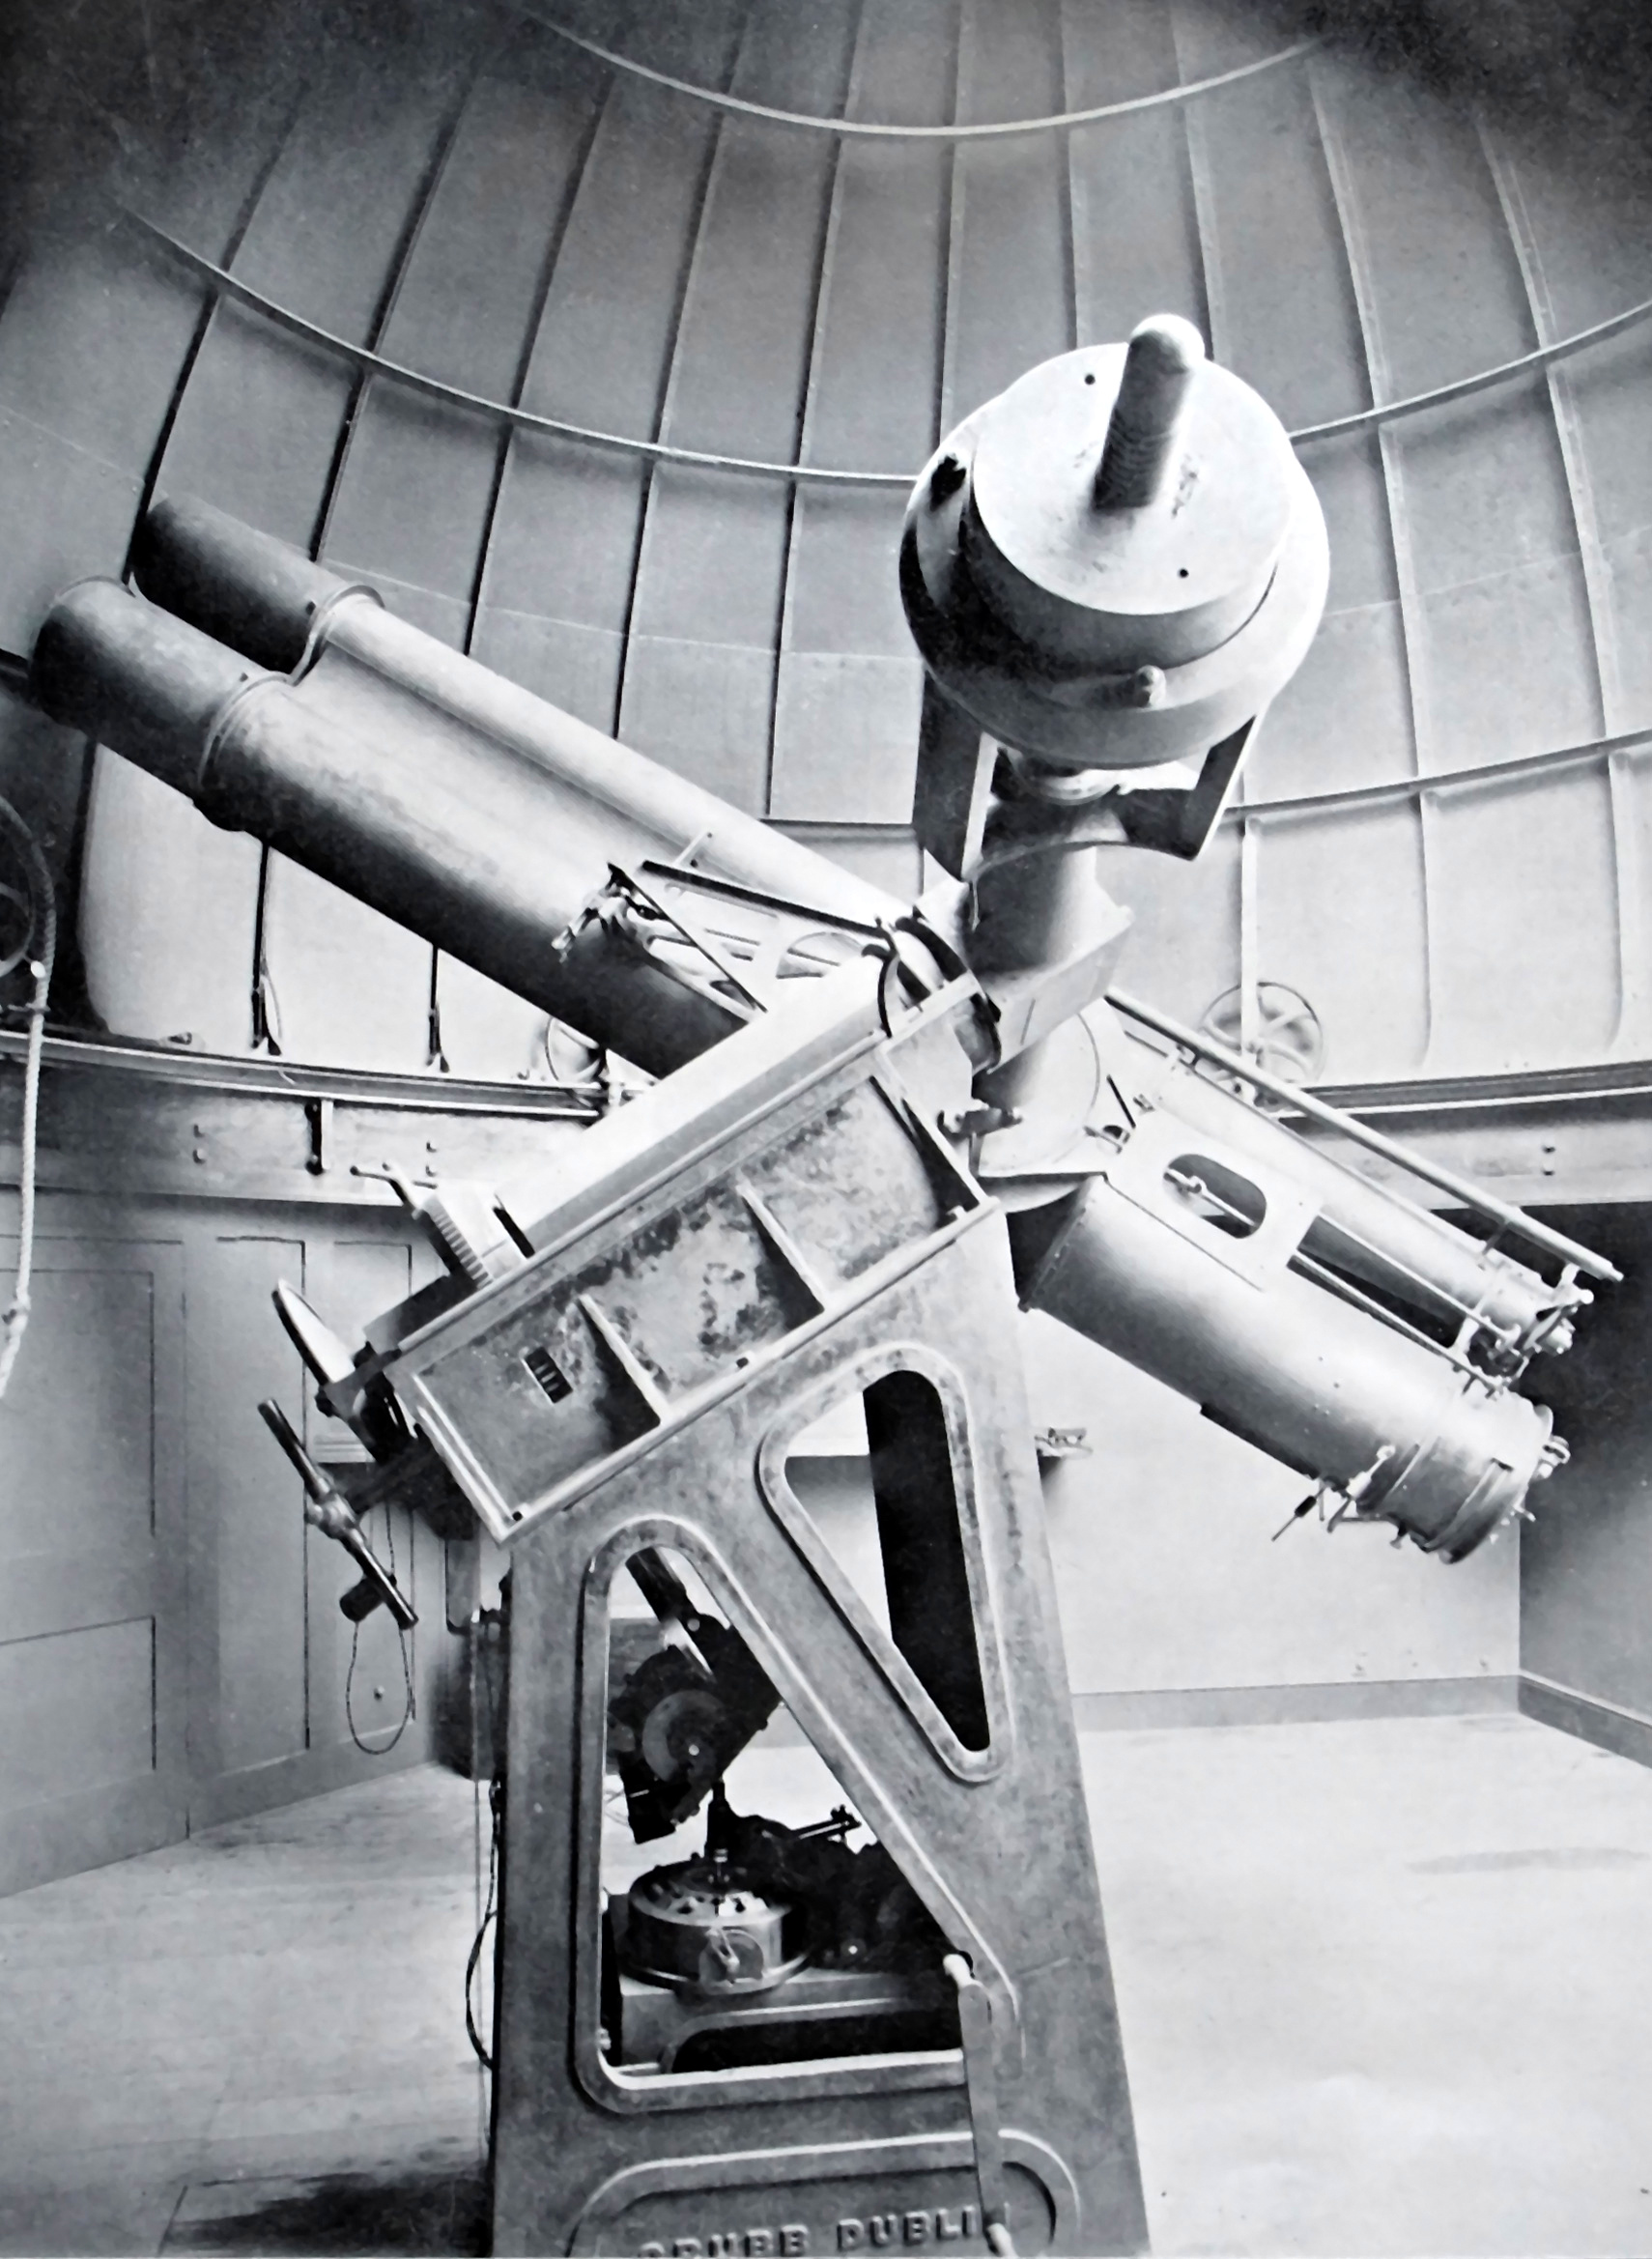 Gill's astrographic telescope